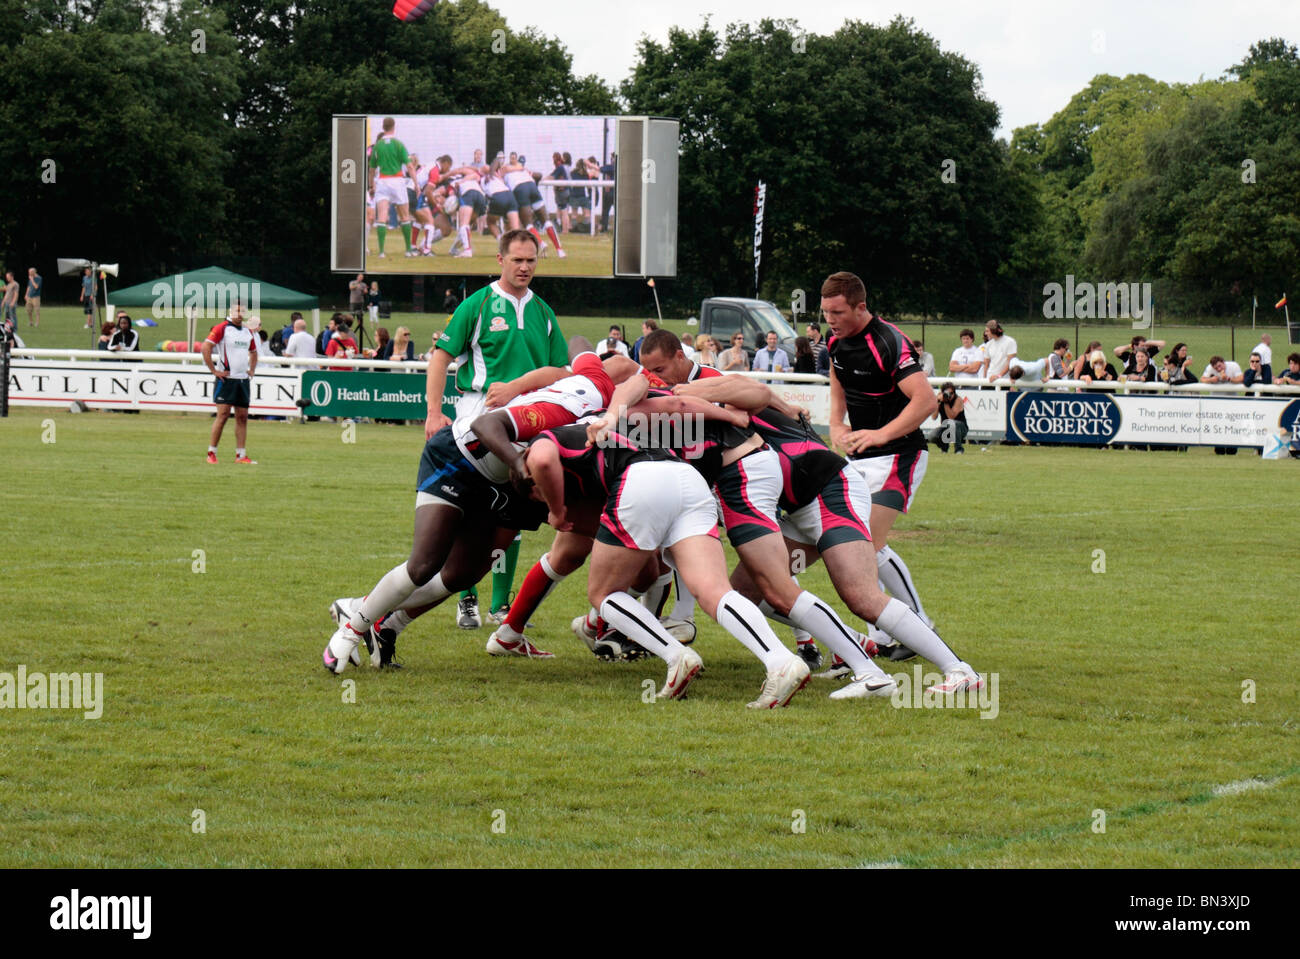 Une mêlée se forme dans un jeu de rugby Club de Rugby, Richmond, Surrey, UK. Juin 2010 (certains flou) Banque D'Images